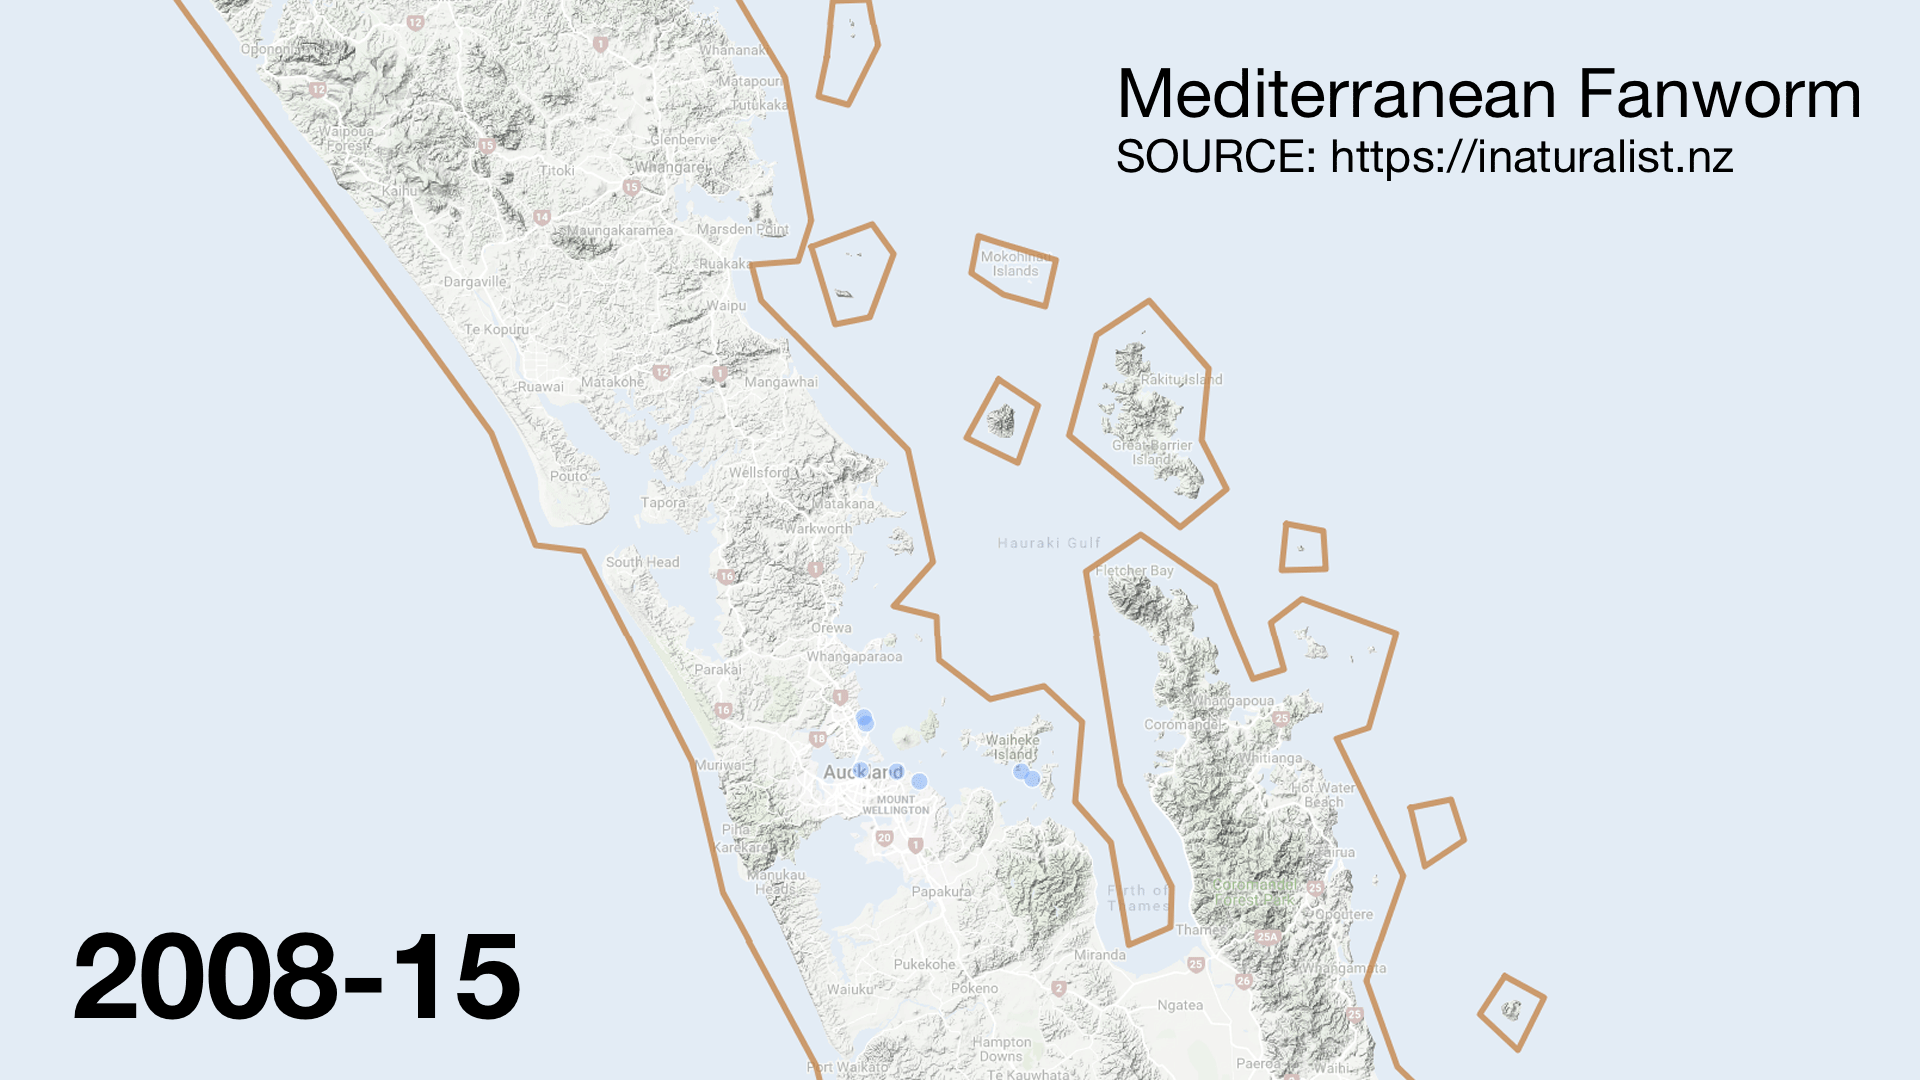 Mediterranean fanworm spread 2008-2018